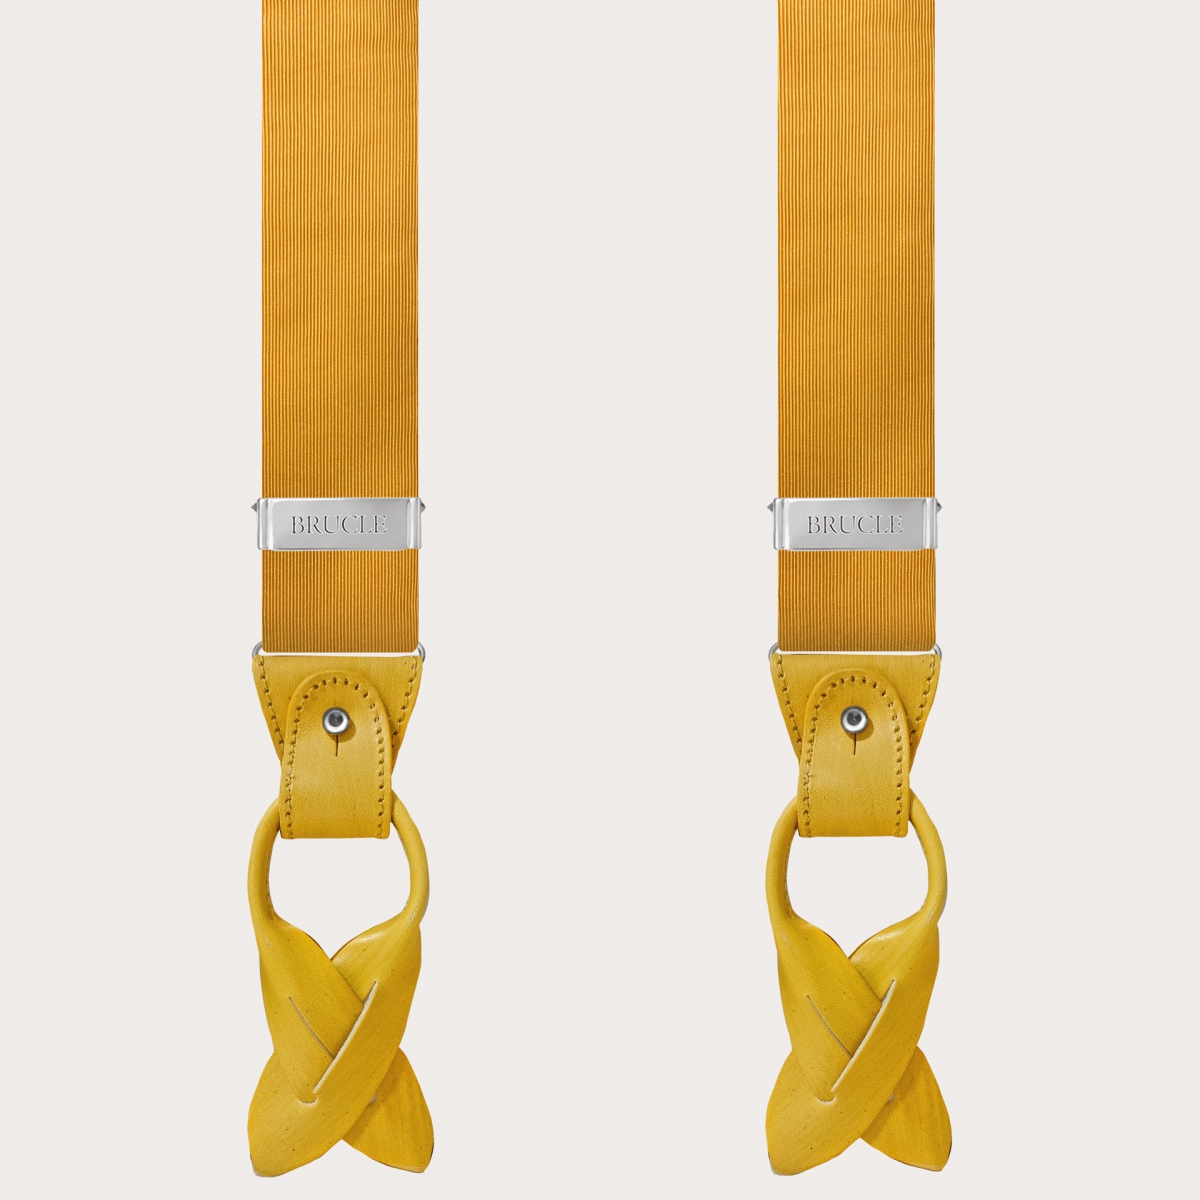 BRUCLE Raffinate bretelle in seta jacquard gialla con parti in pelle colorate a mano